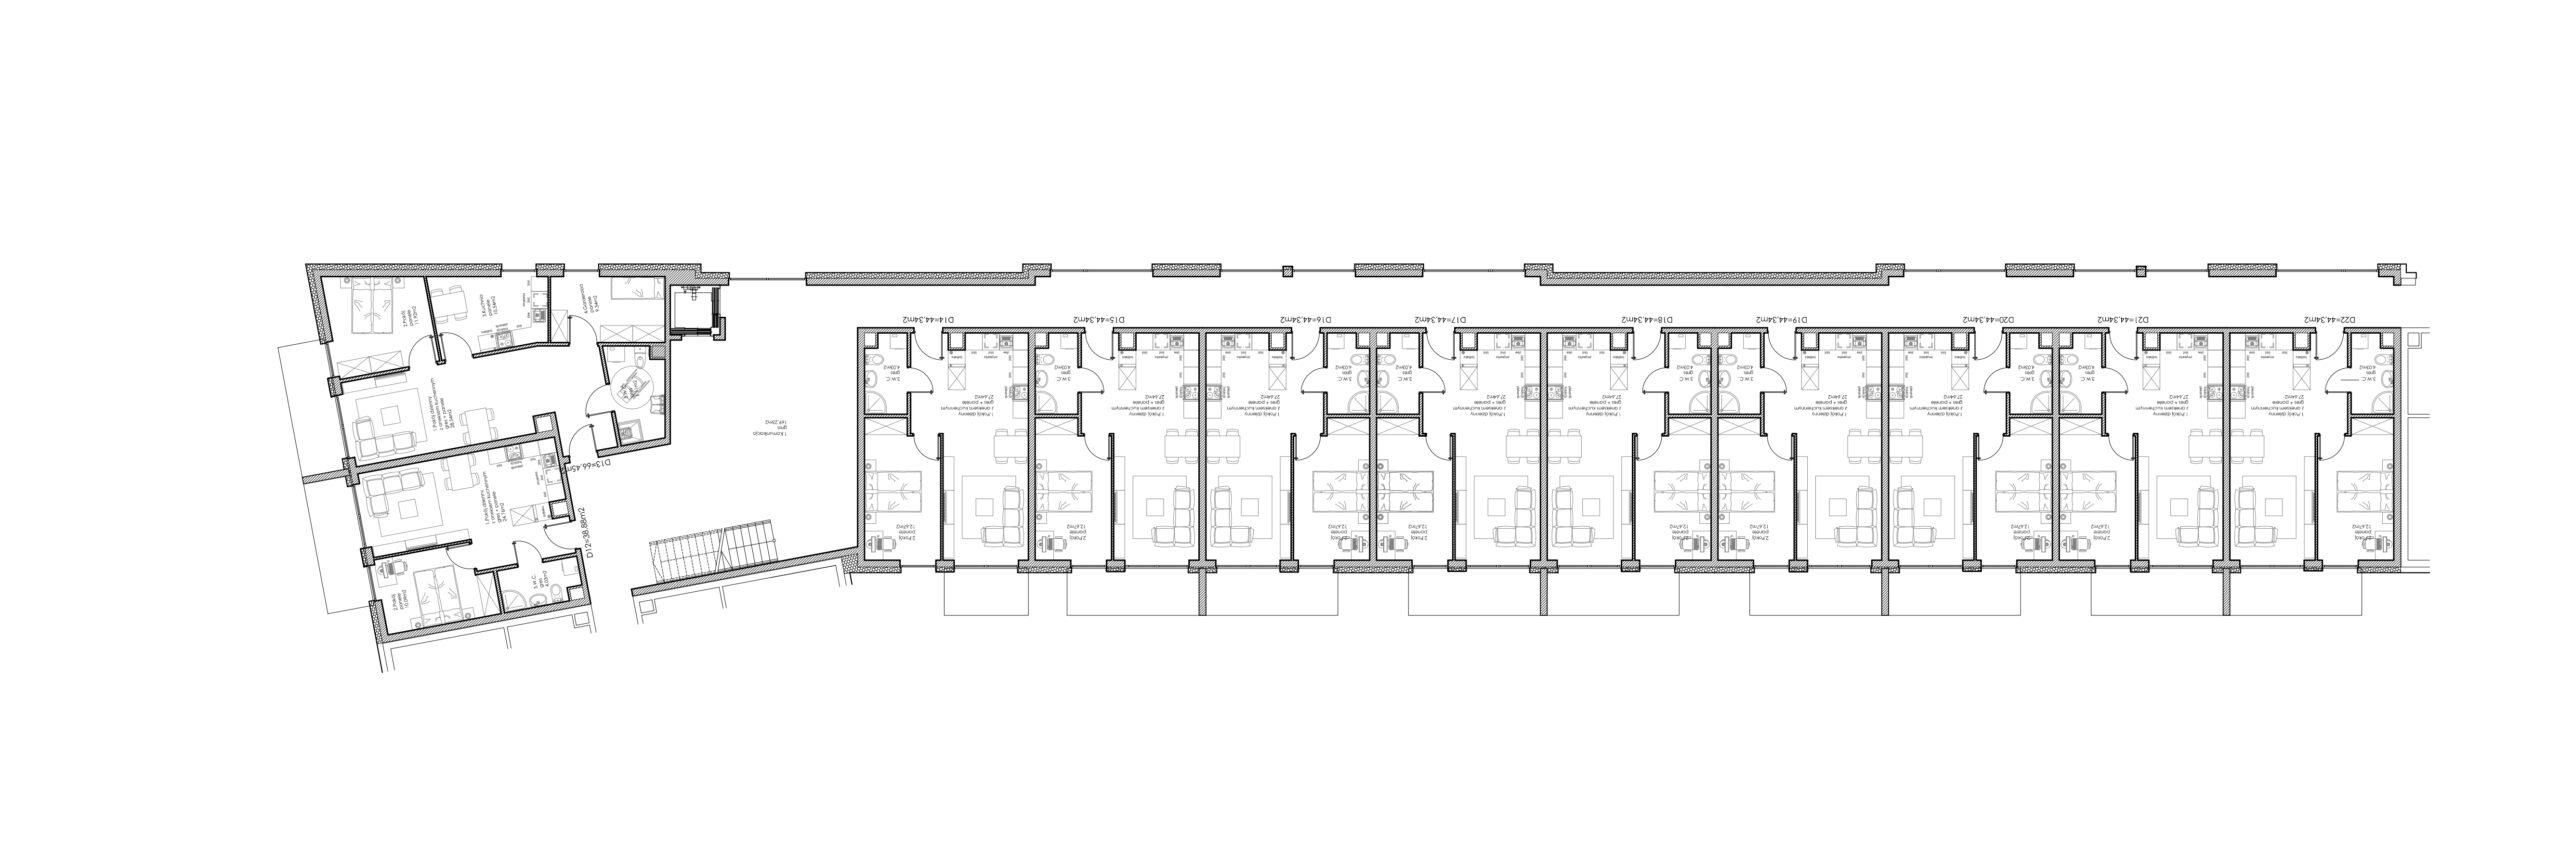 Osiedle Lniane – Segment D – Piętro I